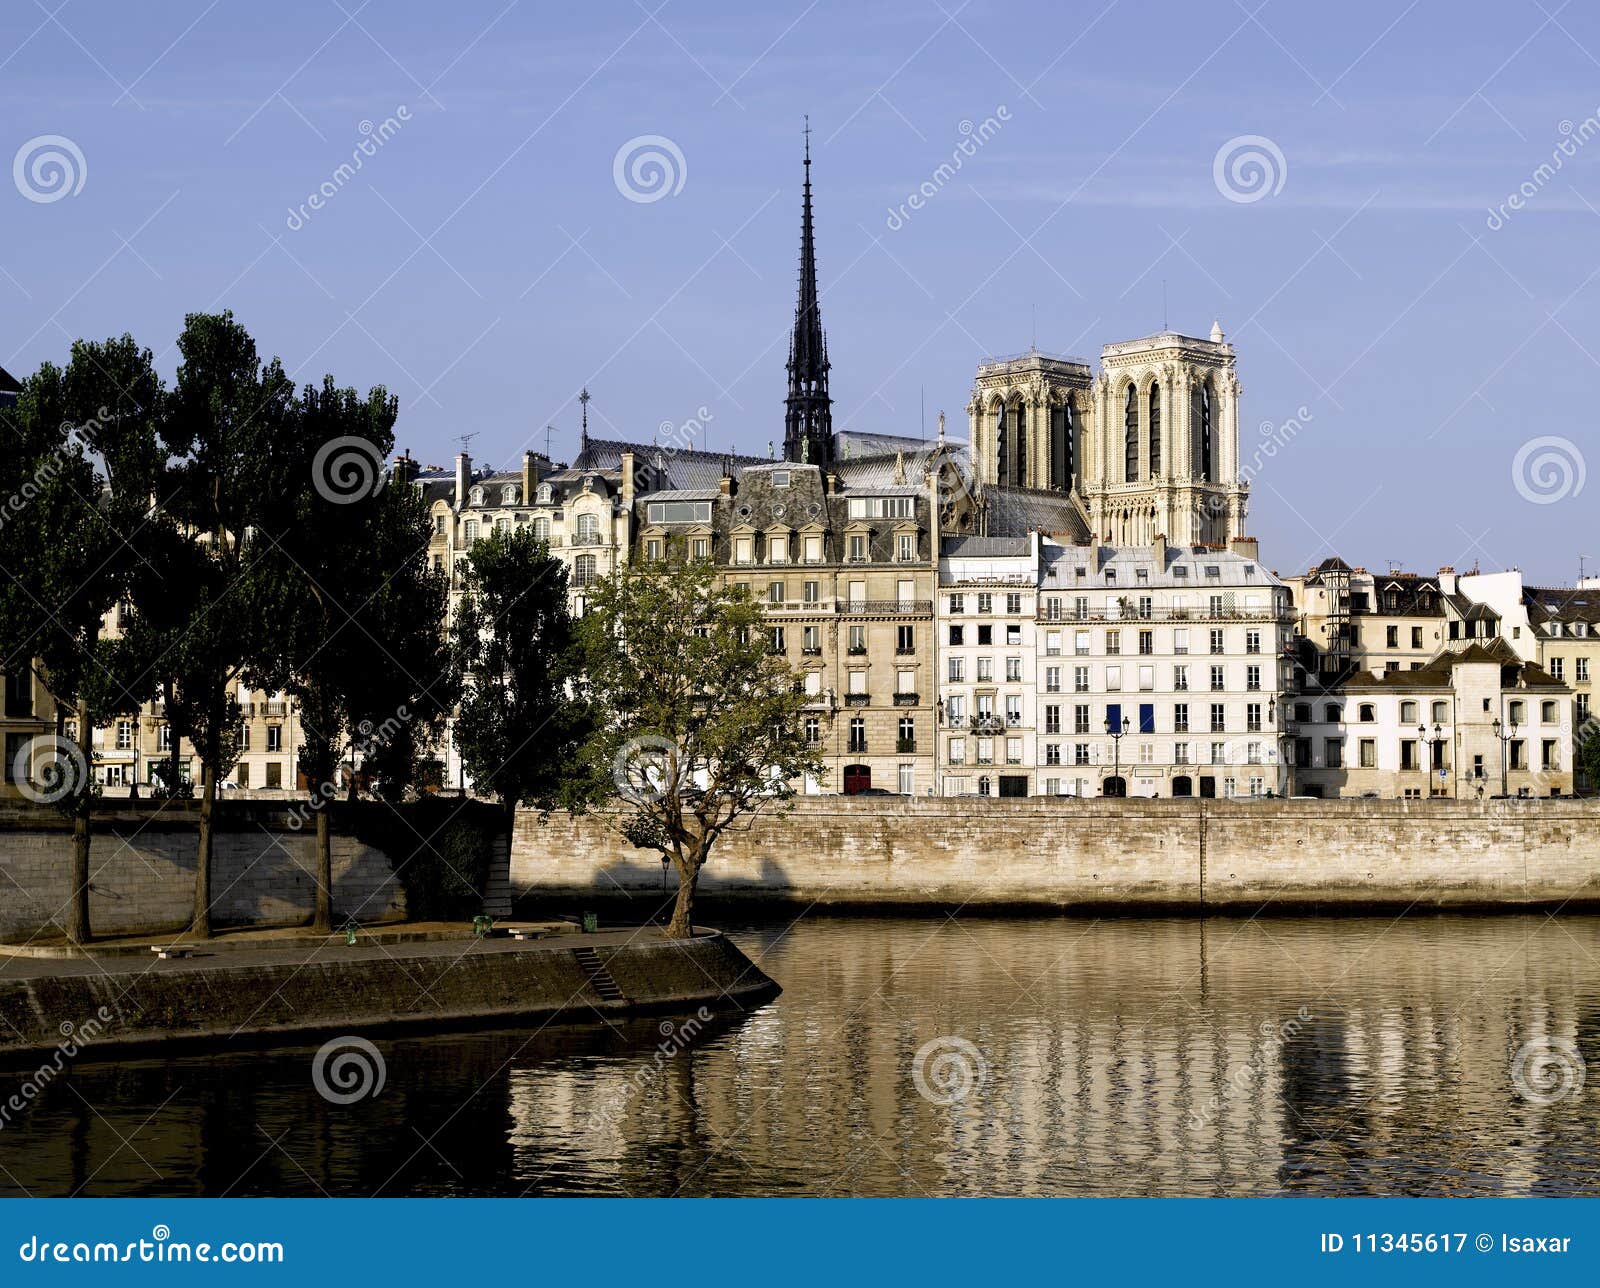 Paris: Ile Saint Louis And Ile De La Cite Royalty Free Stock Photography - Image: 11345617